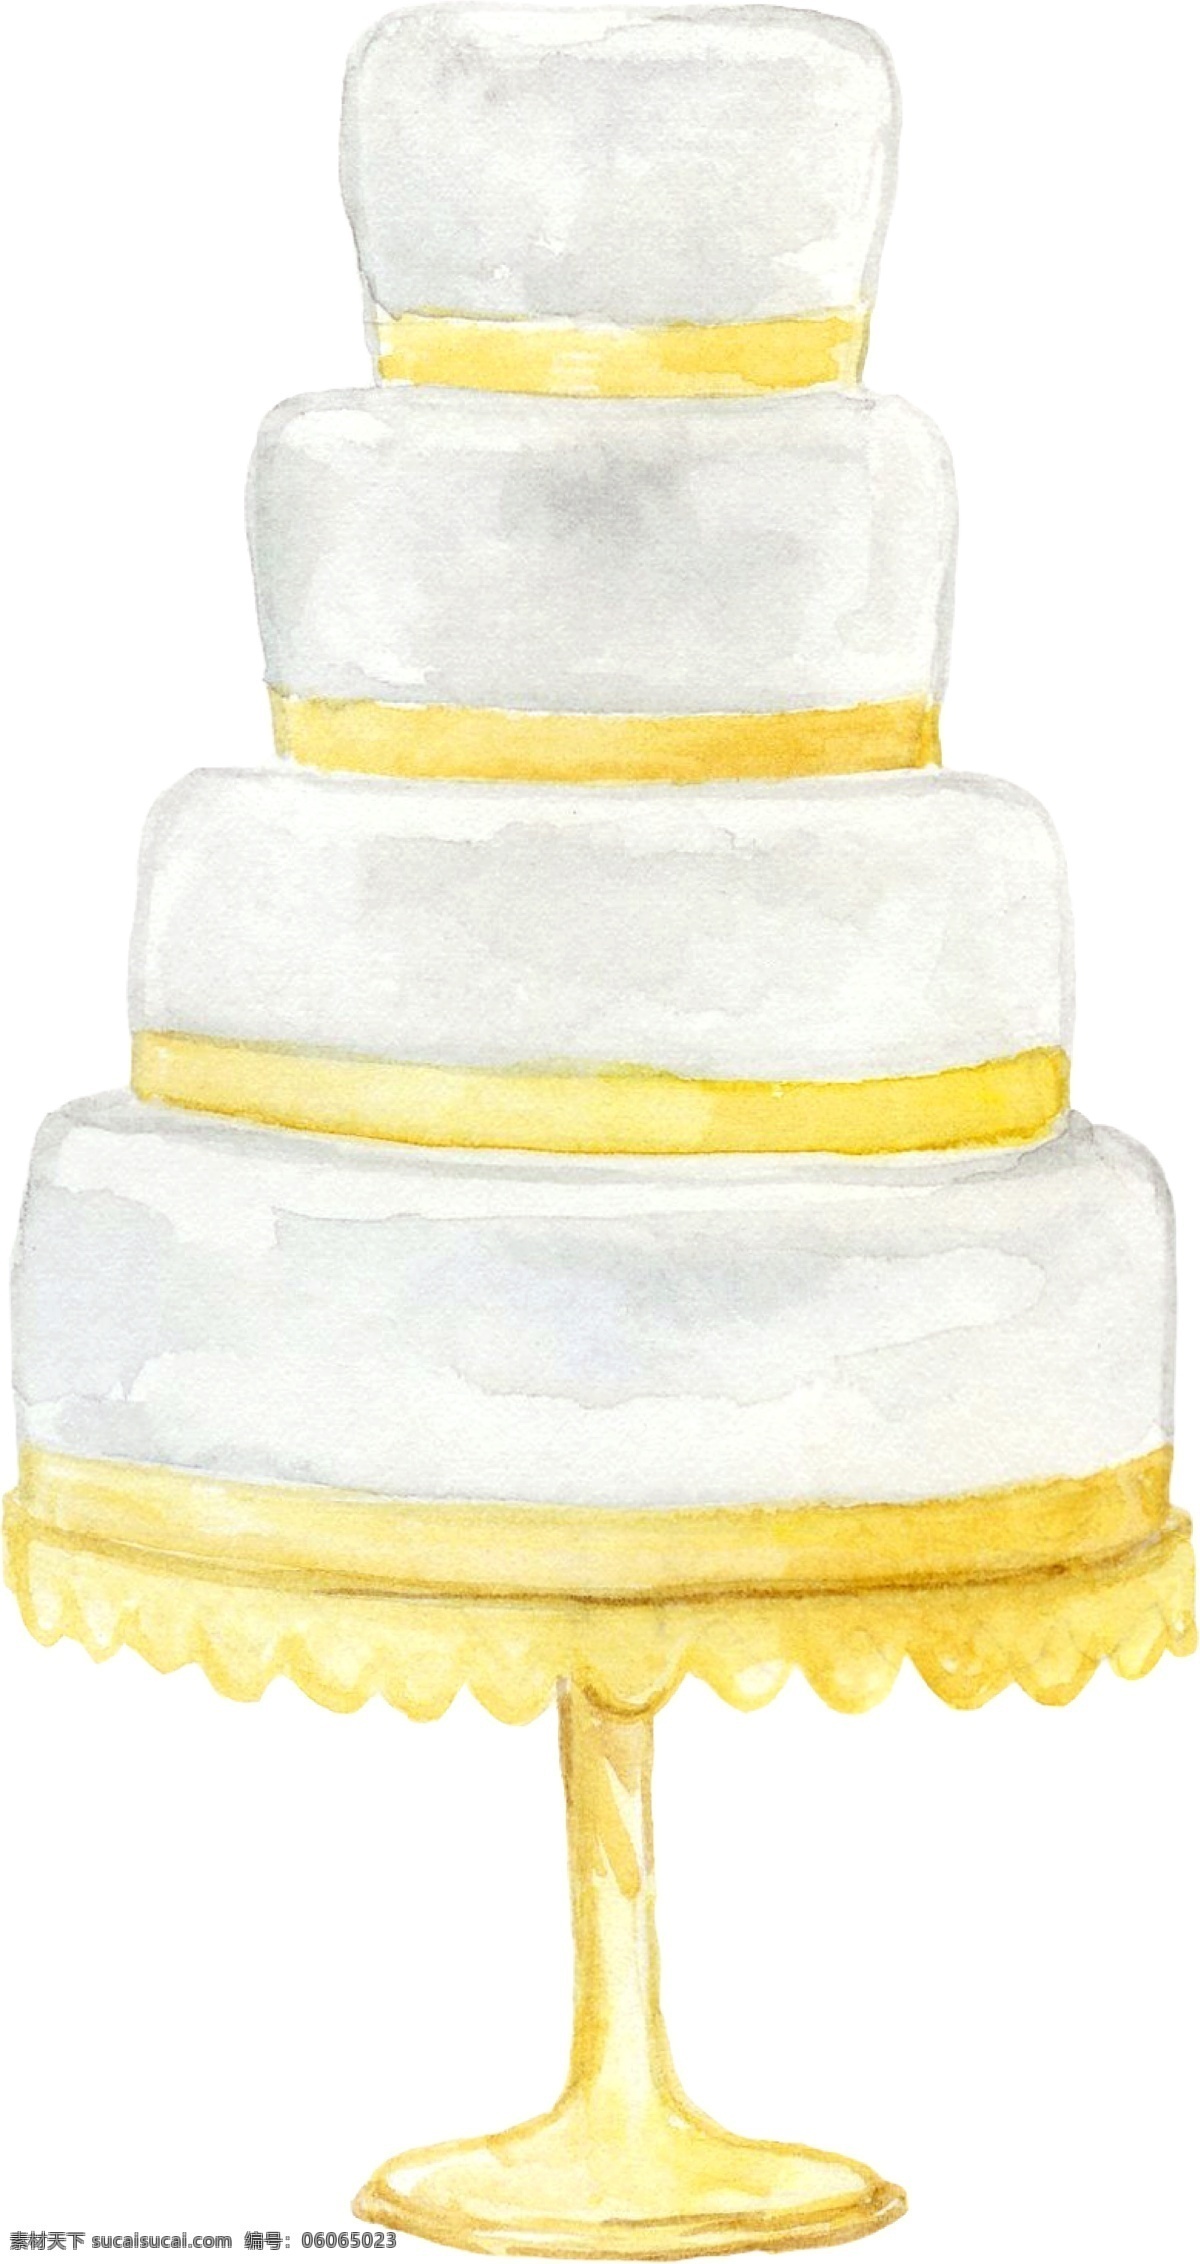 卡通 水彩 手绘 小 清新 生日 婚礼 蛋糕 小清新 森系 庆祝 手绘蛋糕 卡通蛋糕 手绘蛋糕塔